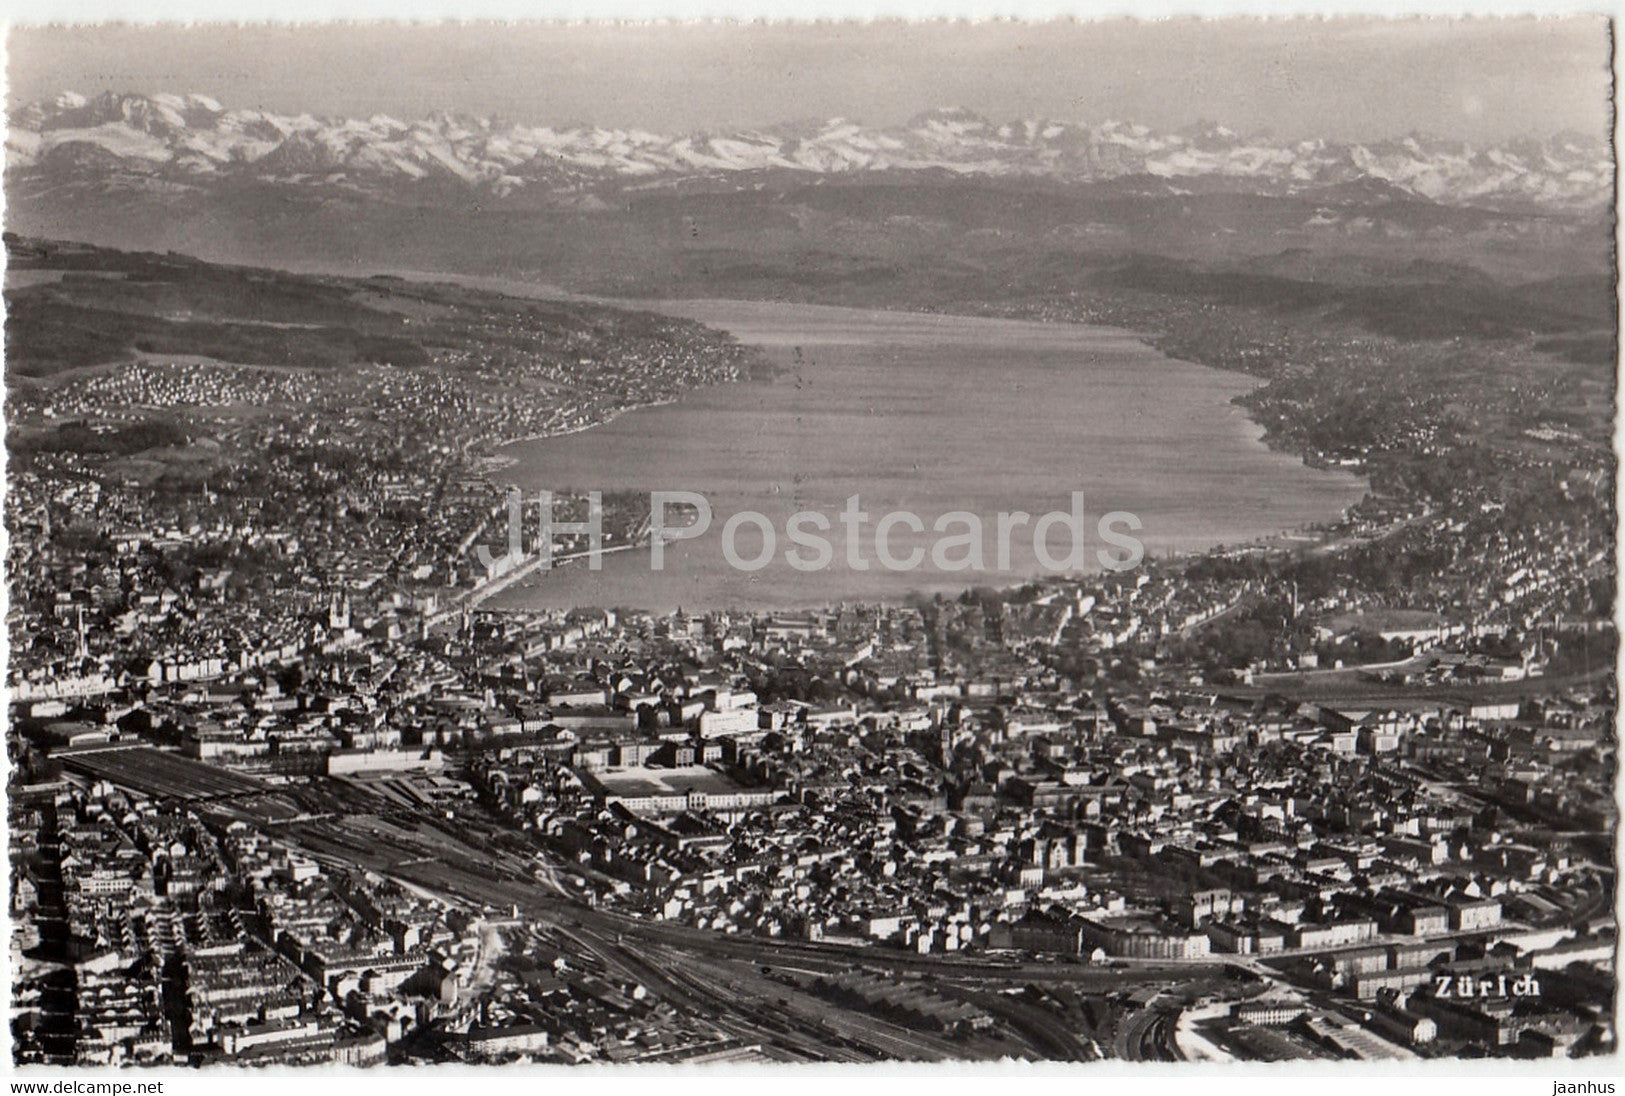 Zurich - aerial view - 49 - Switzerland - unused - JH Postcards